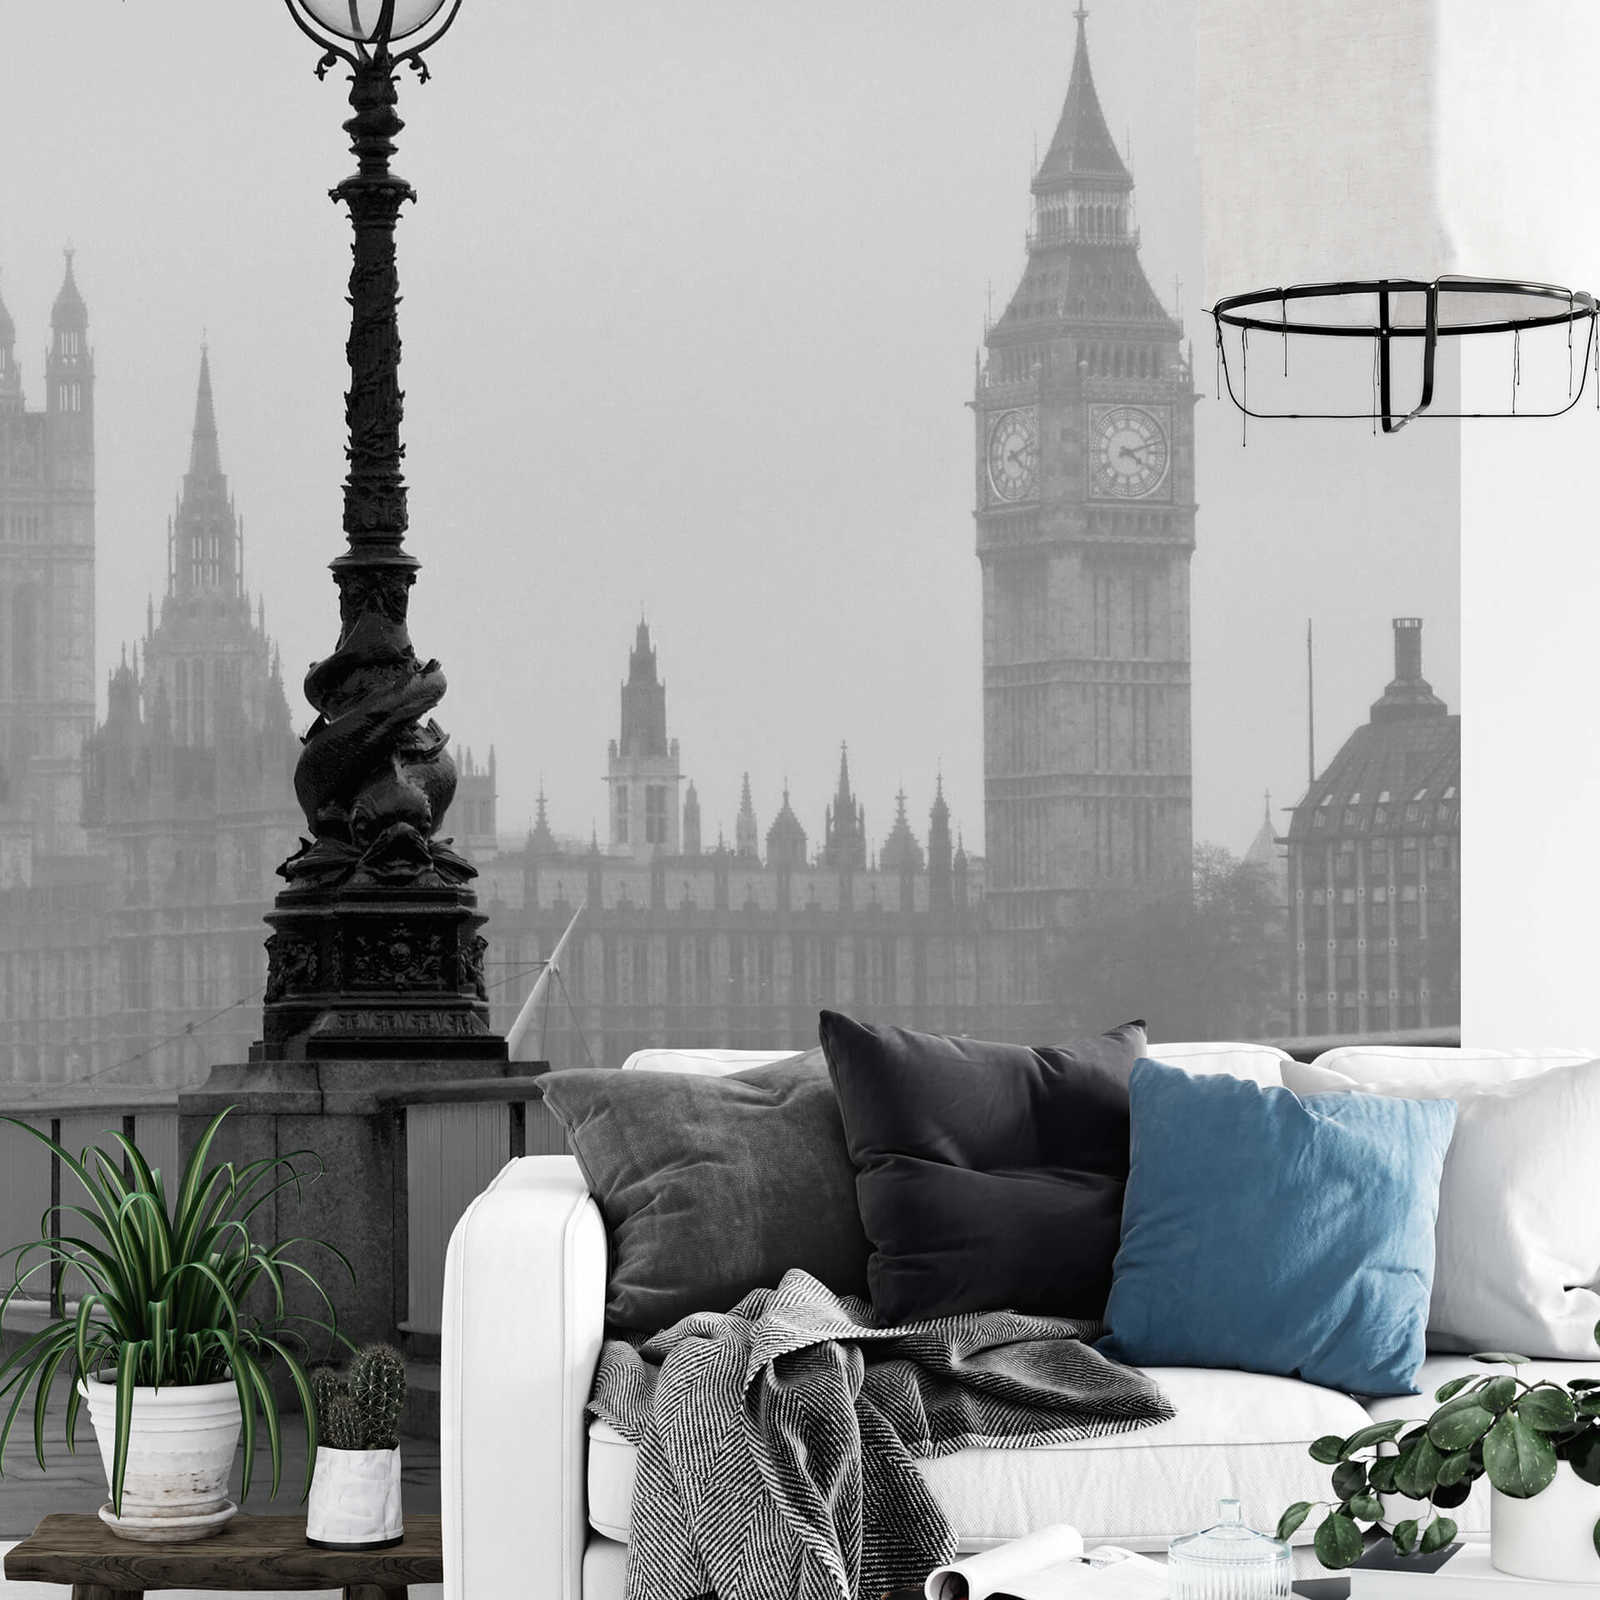             Fotomurali London City in Fog - Nero, bianco, grigio
        